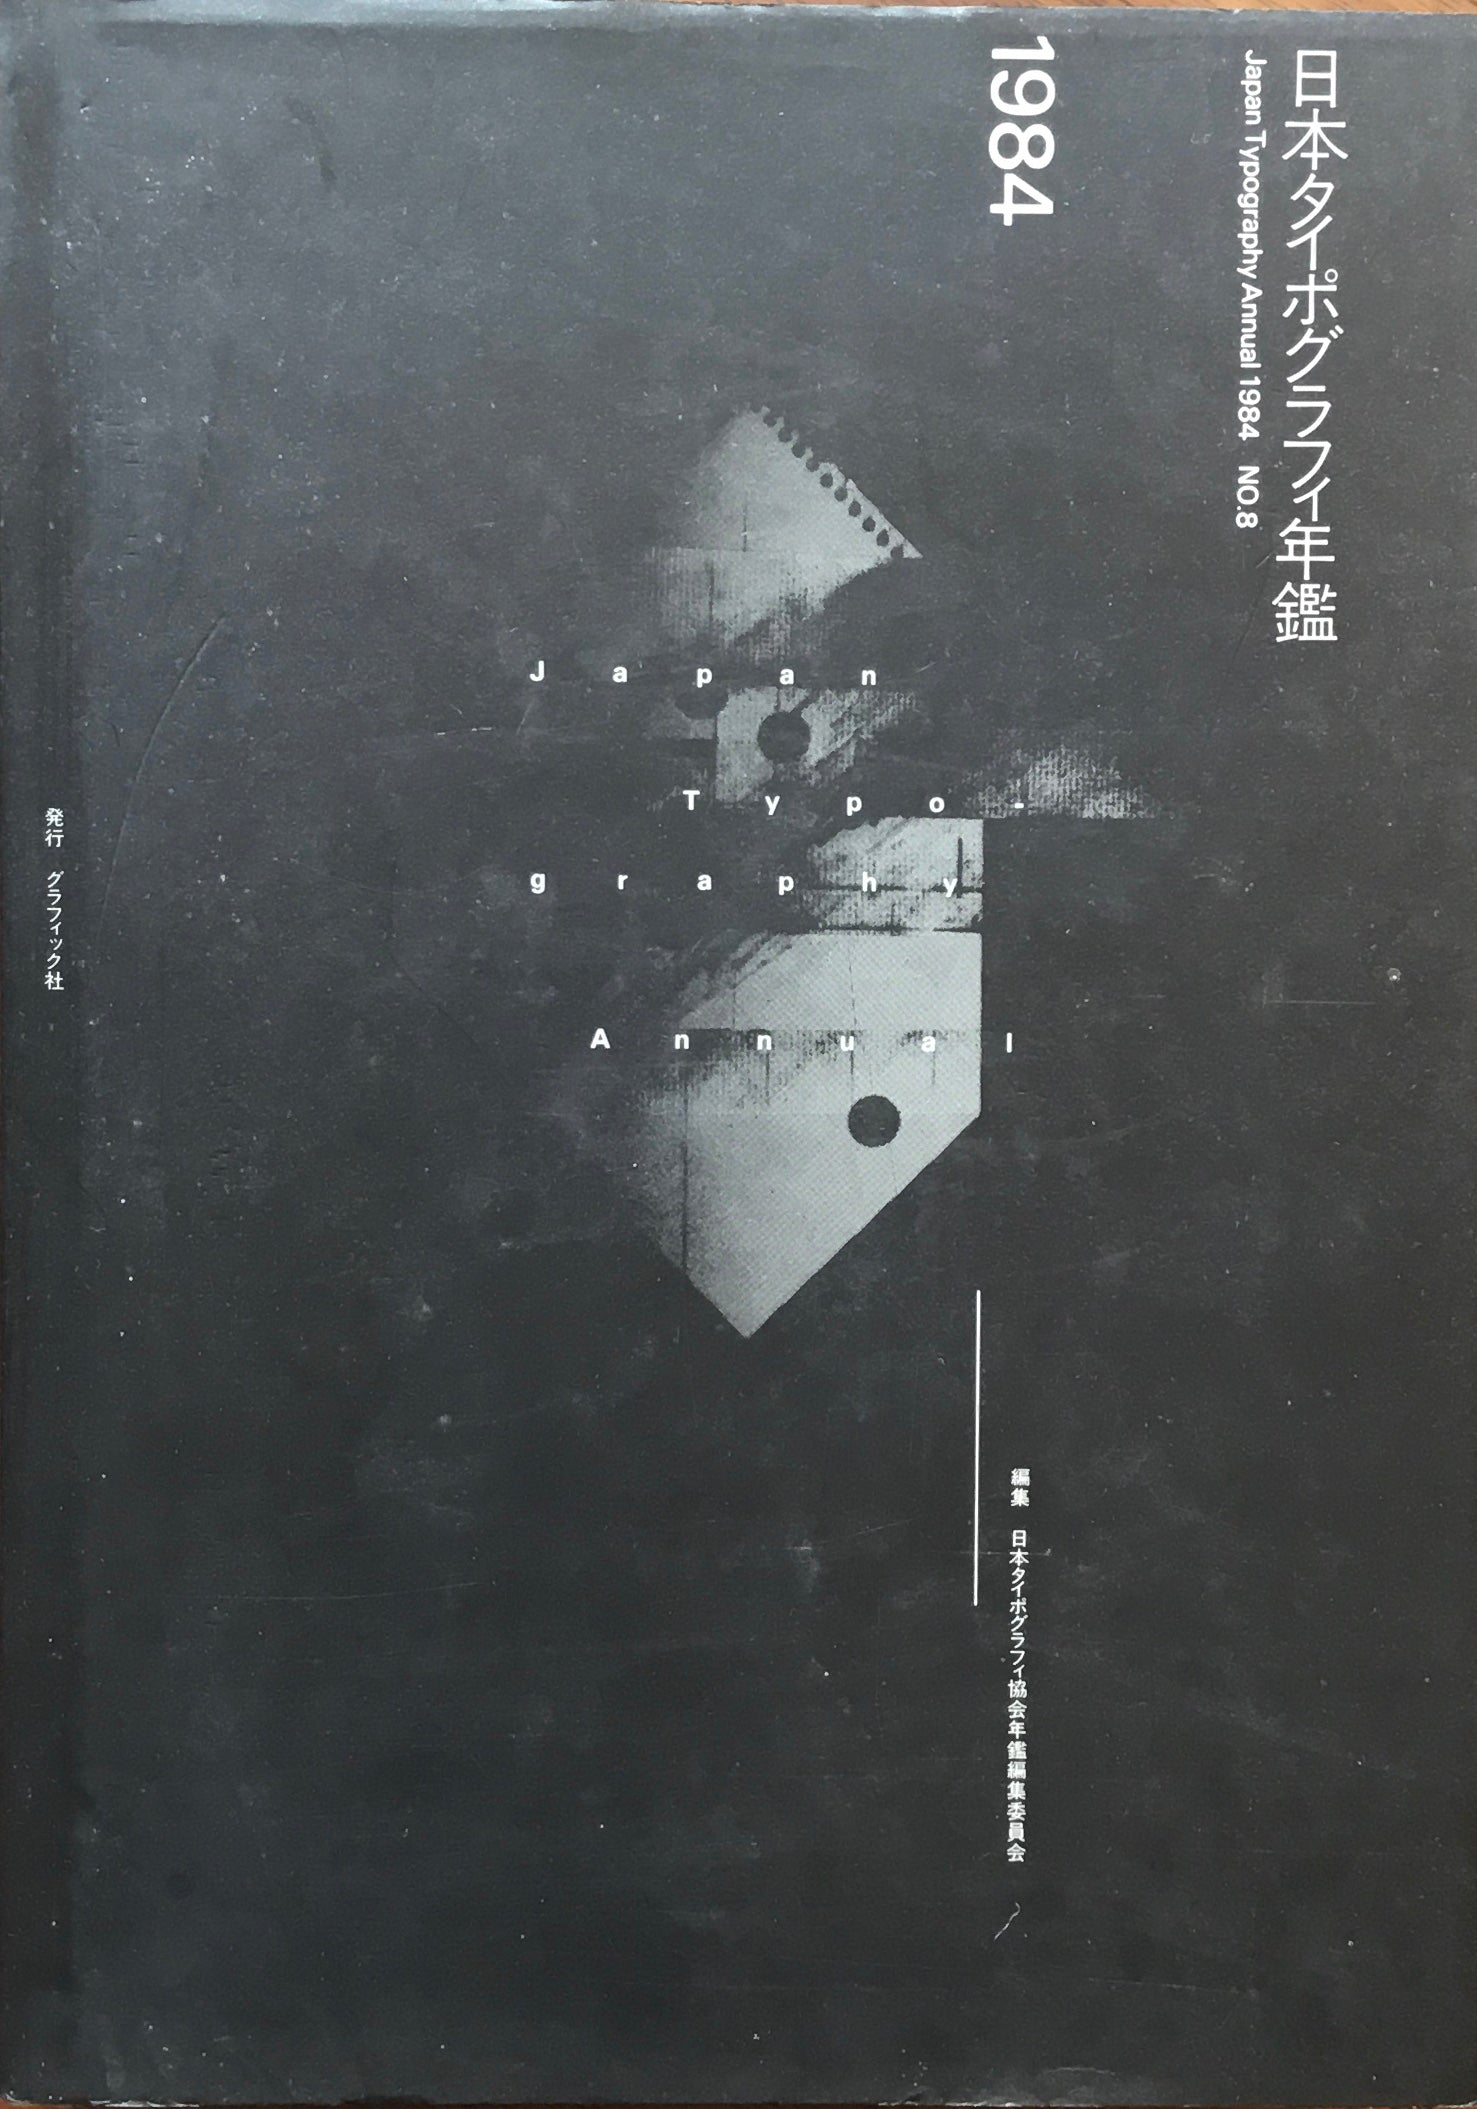 日本タイポグラフィ年鑑 1984 APPLIED TYPOGRAPHY 8 日本 